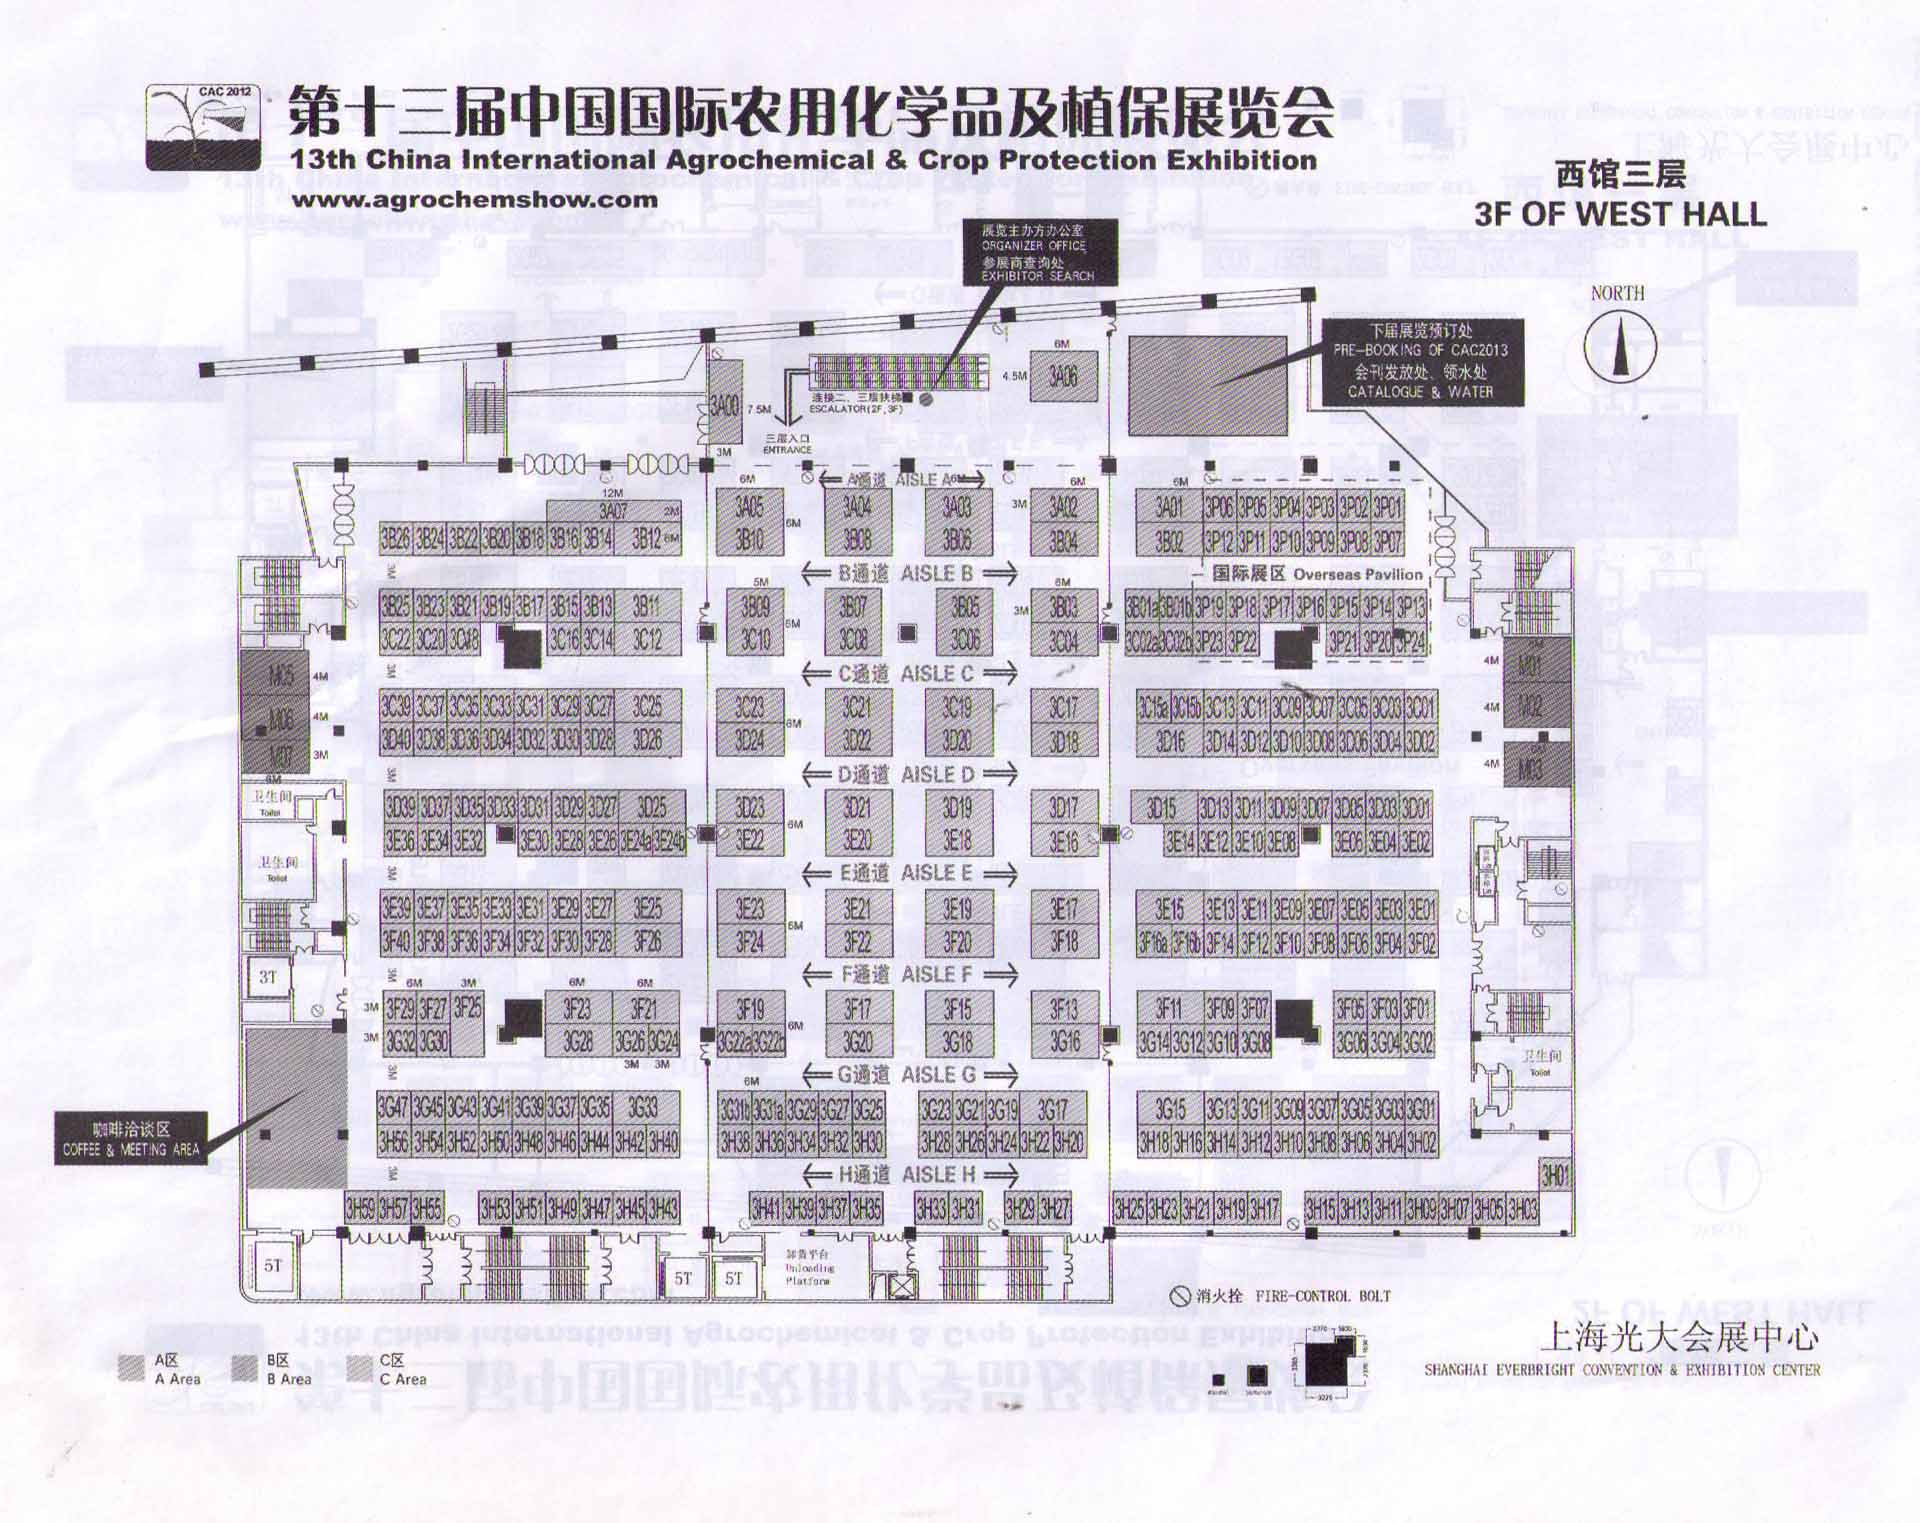 第十三届中国国际农用化学品及植保展览会的平面图